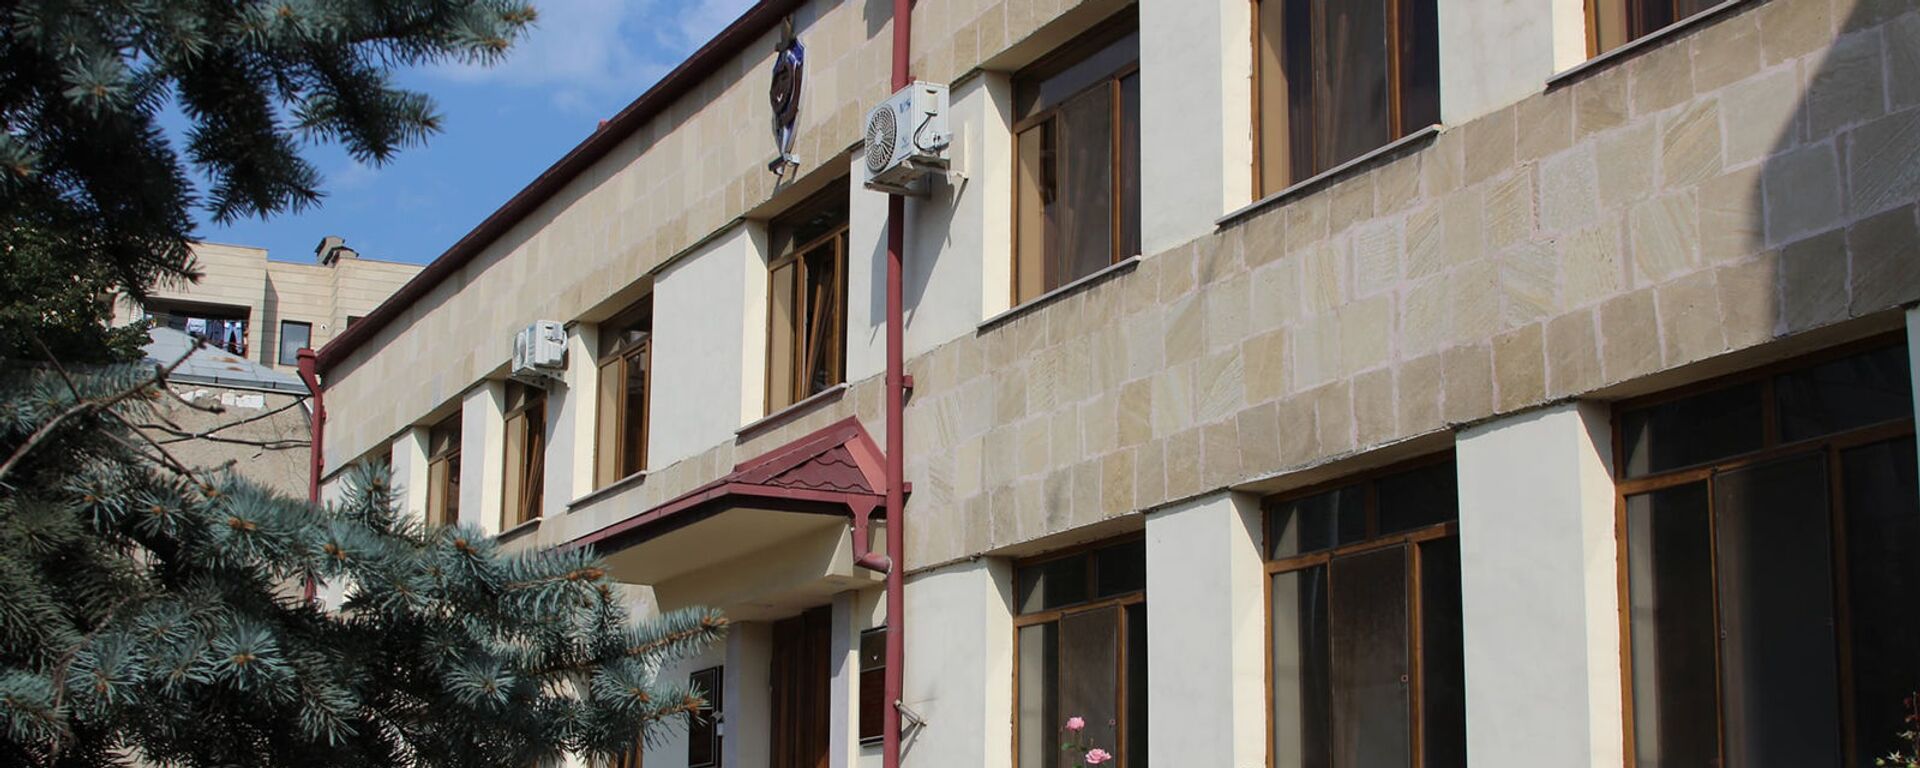 Здание Службы национальной безопасности Карабаха - Sputnik Армения, 1920, 25.09.2021